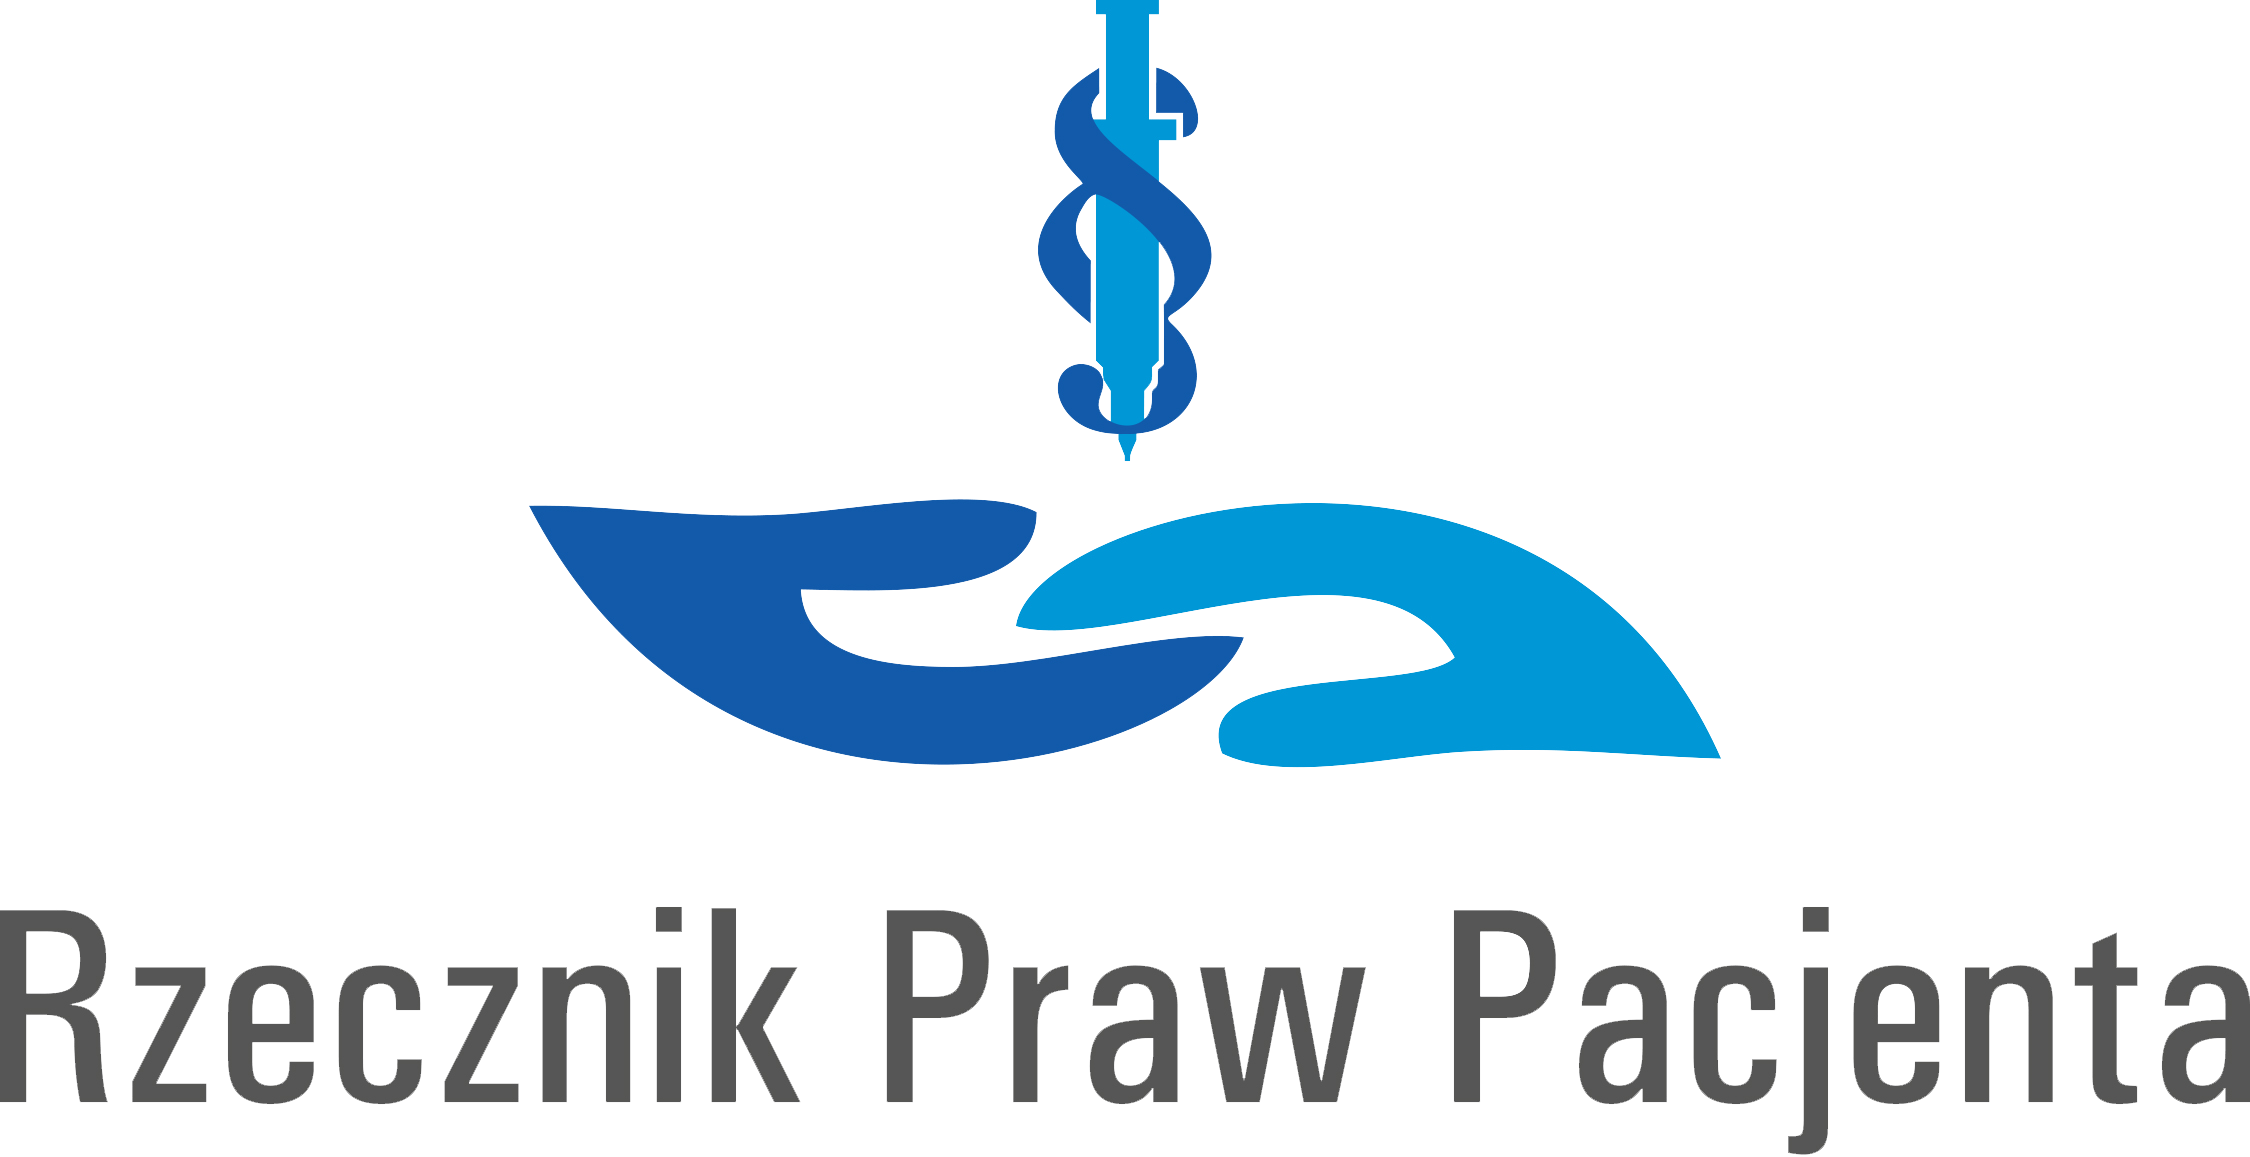 logo RPP